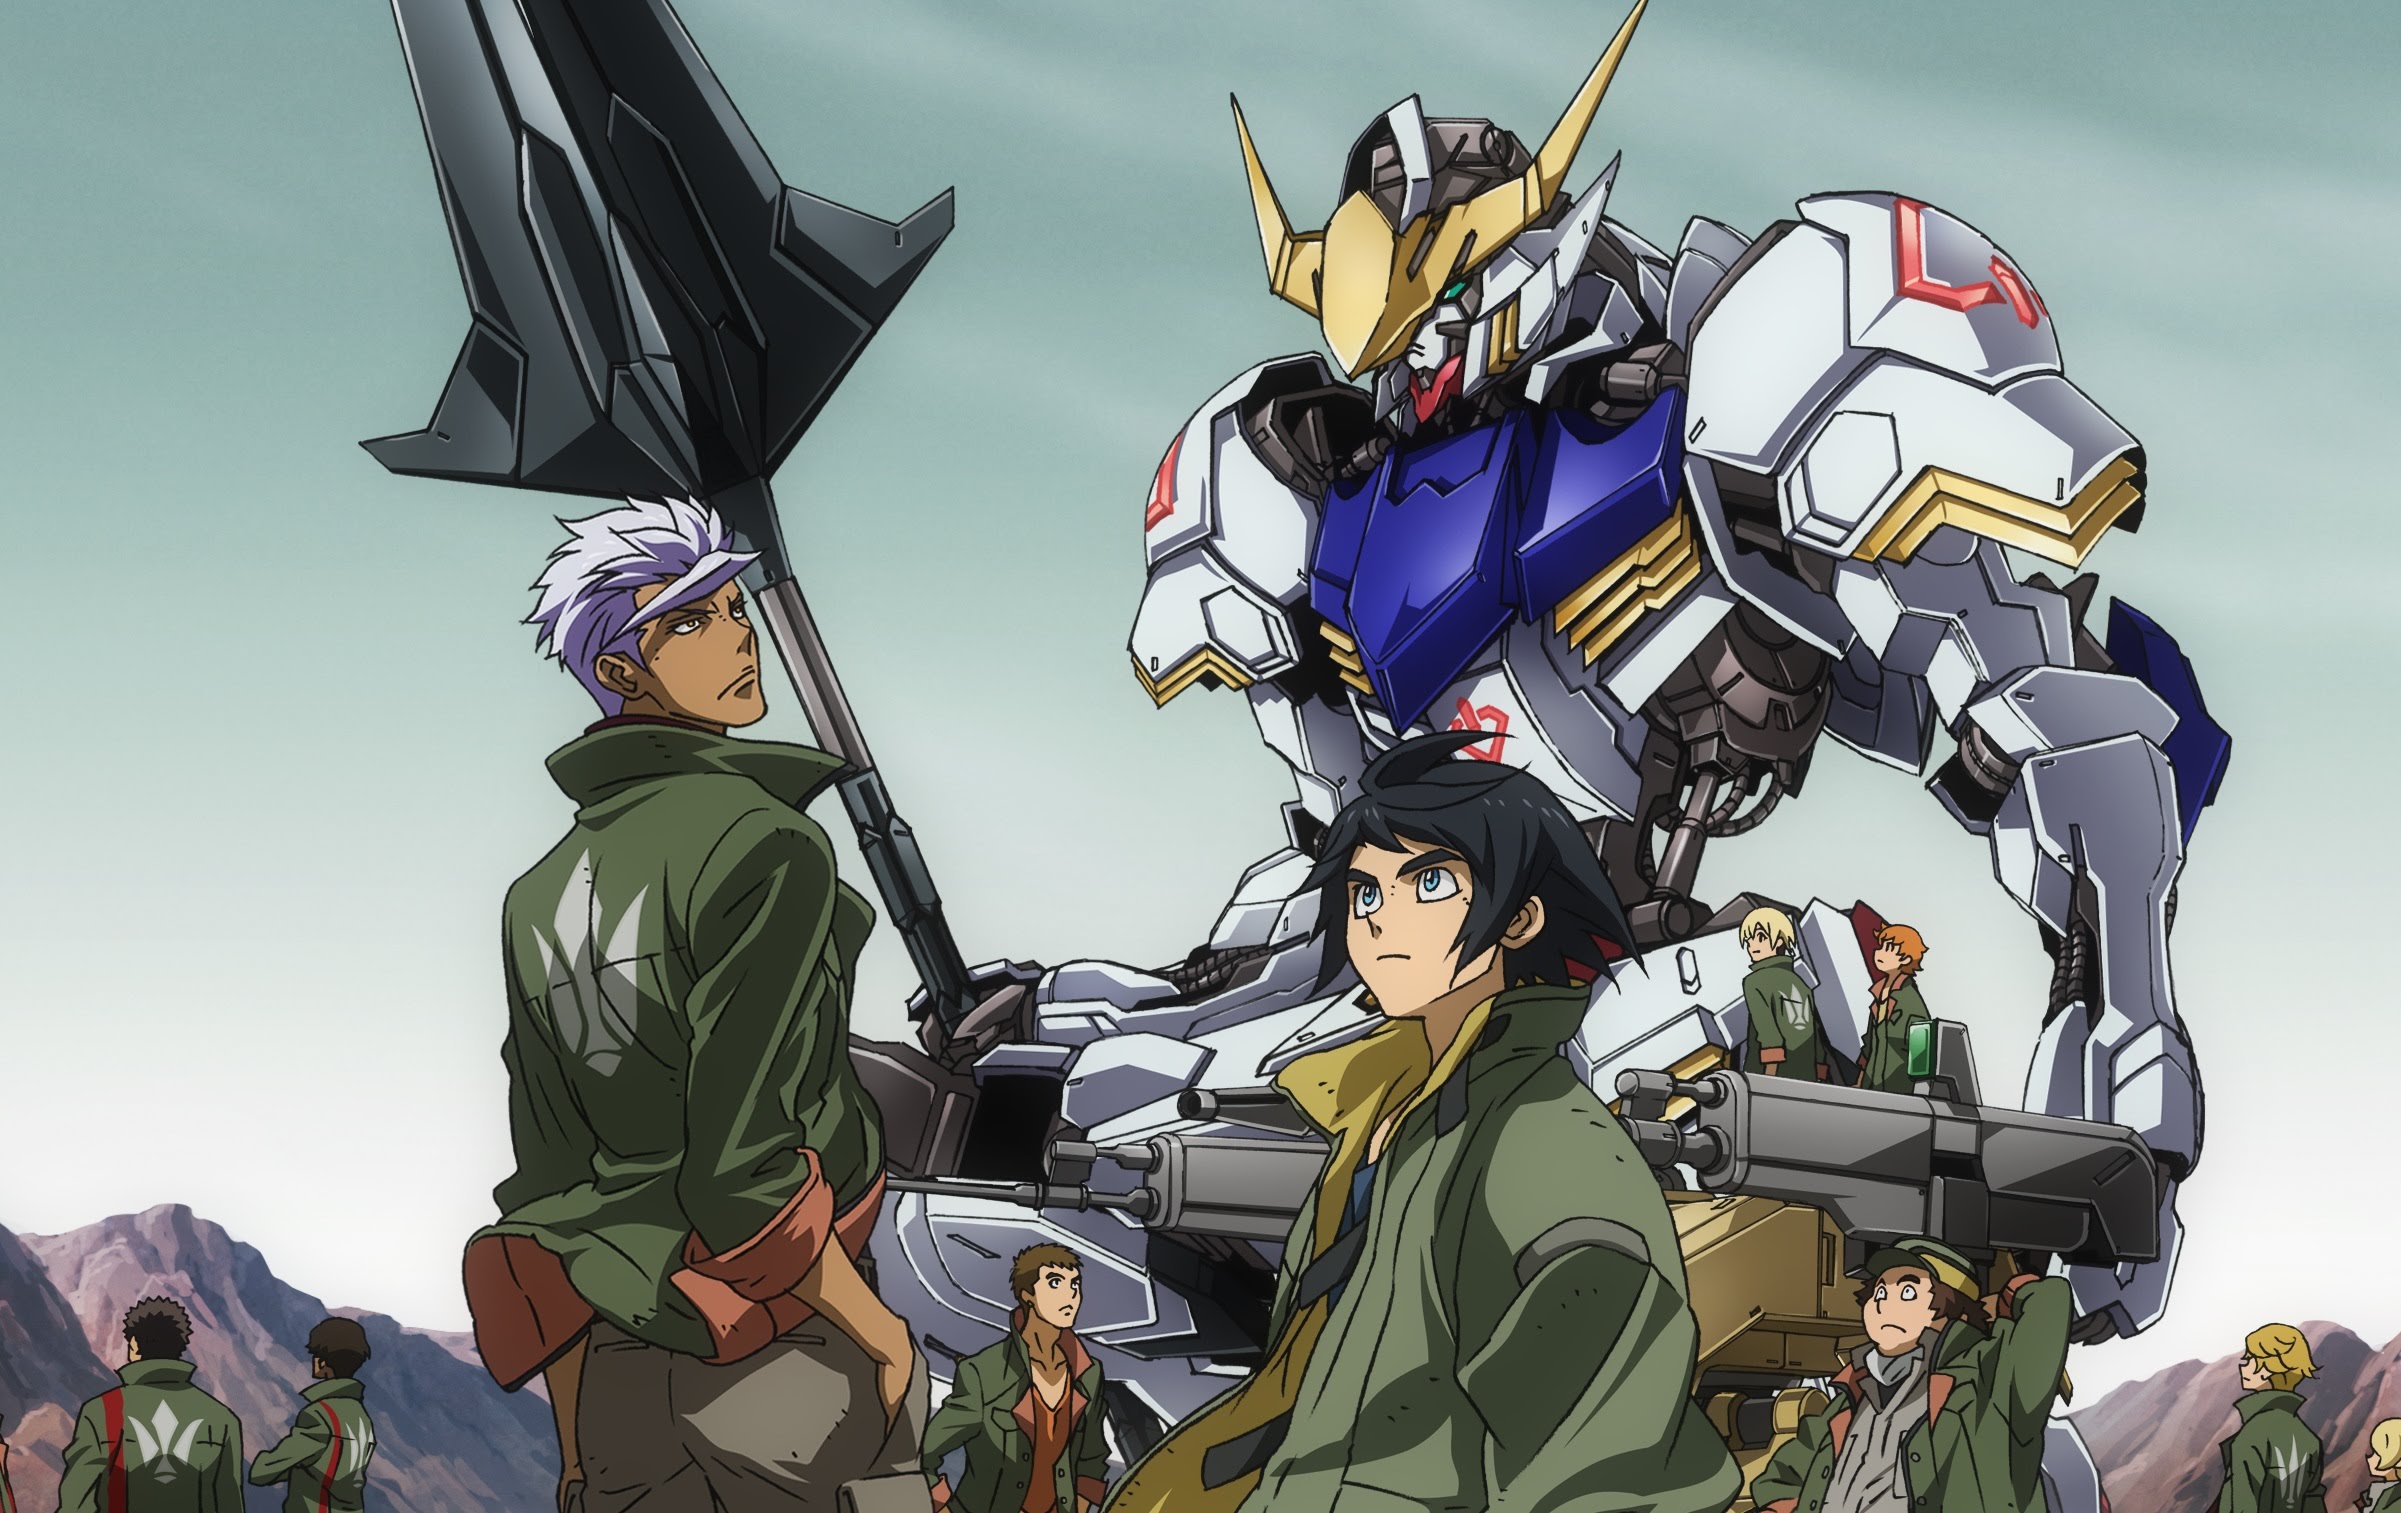 Wallpaper : anime, Anime screenshot, Gundam Bael, Mobile Suit Gundam Iron  Blooded Orphans, mechs, Super Robot Taisen, artwork, digital art 1920x1080  - ThorRagnarok - 2126949 - HD Wallpapers - WallHere